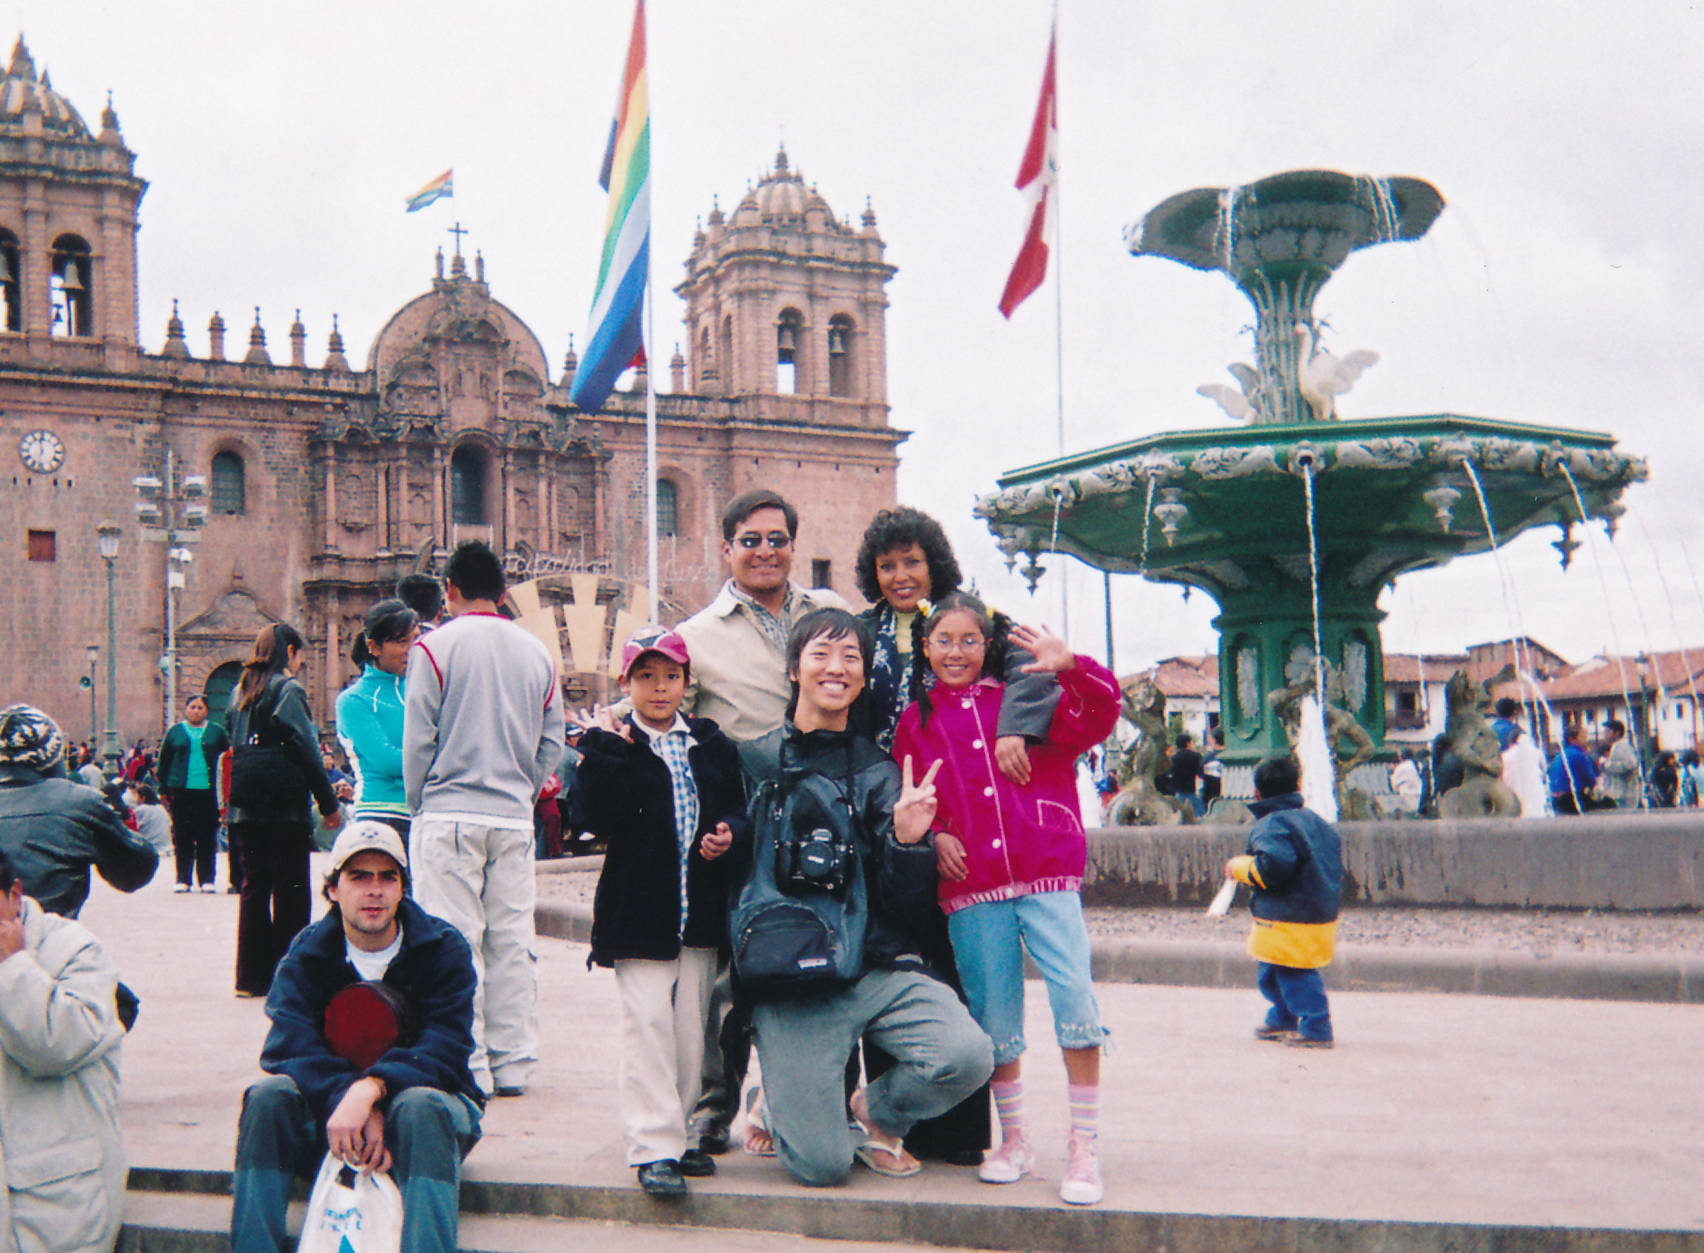 学生時代、カメラを片手に世界一周をした小海途さん。写真はペルーを訪れた際に南米3大祭りの一つとして数えられる『インティ・ライミ』で出会った家族との一枚。「いい思い出がいっぱいあります」（小海途さん）